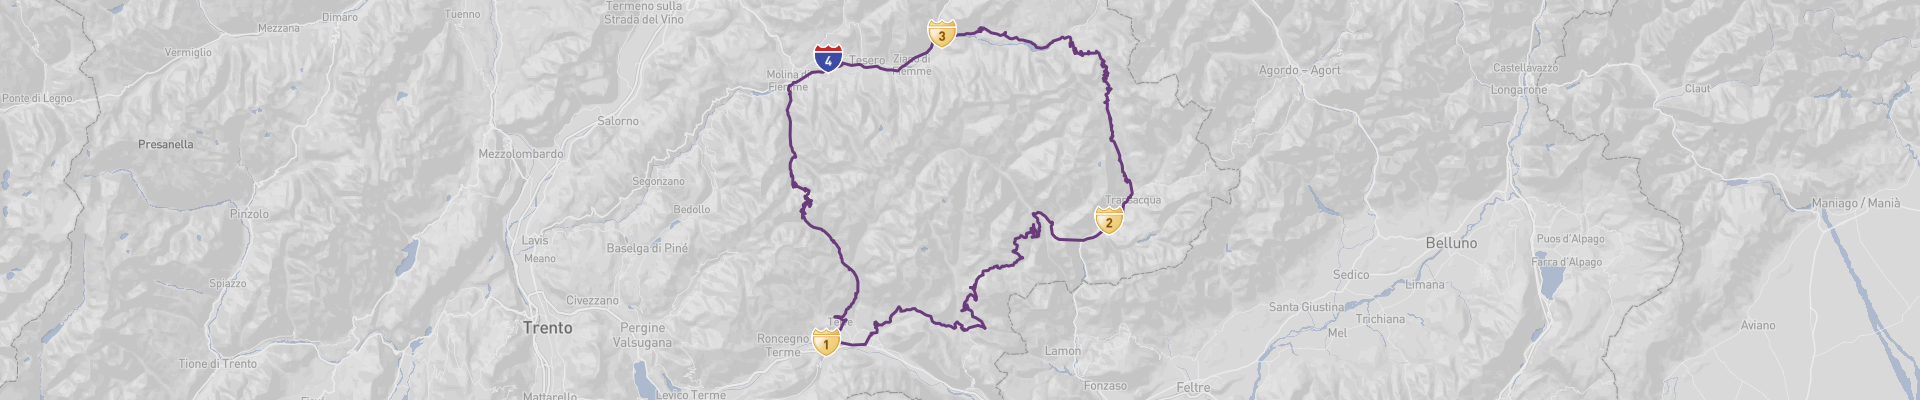 Itinéraire Boucle des Dolomites 